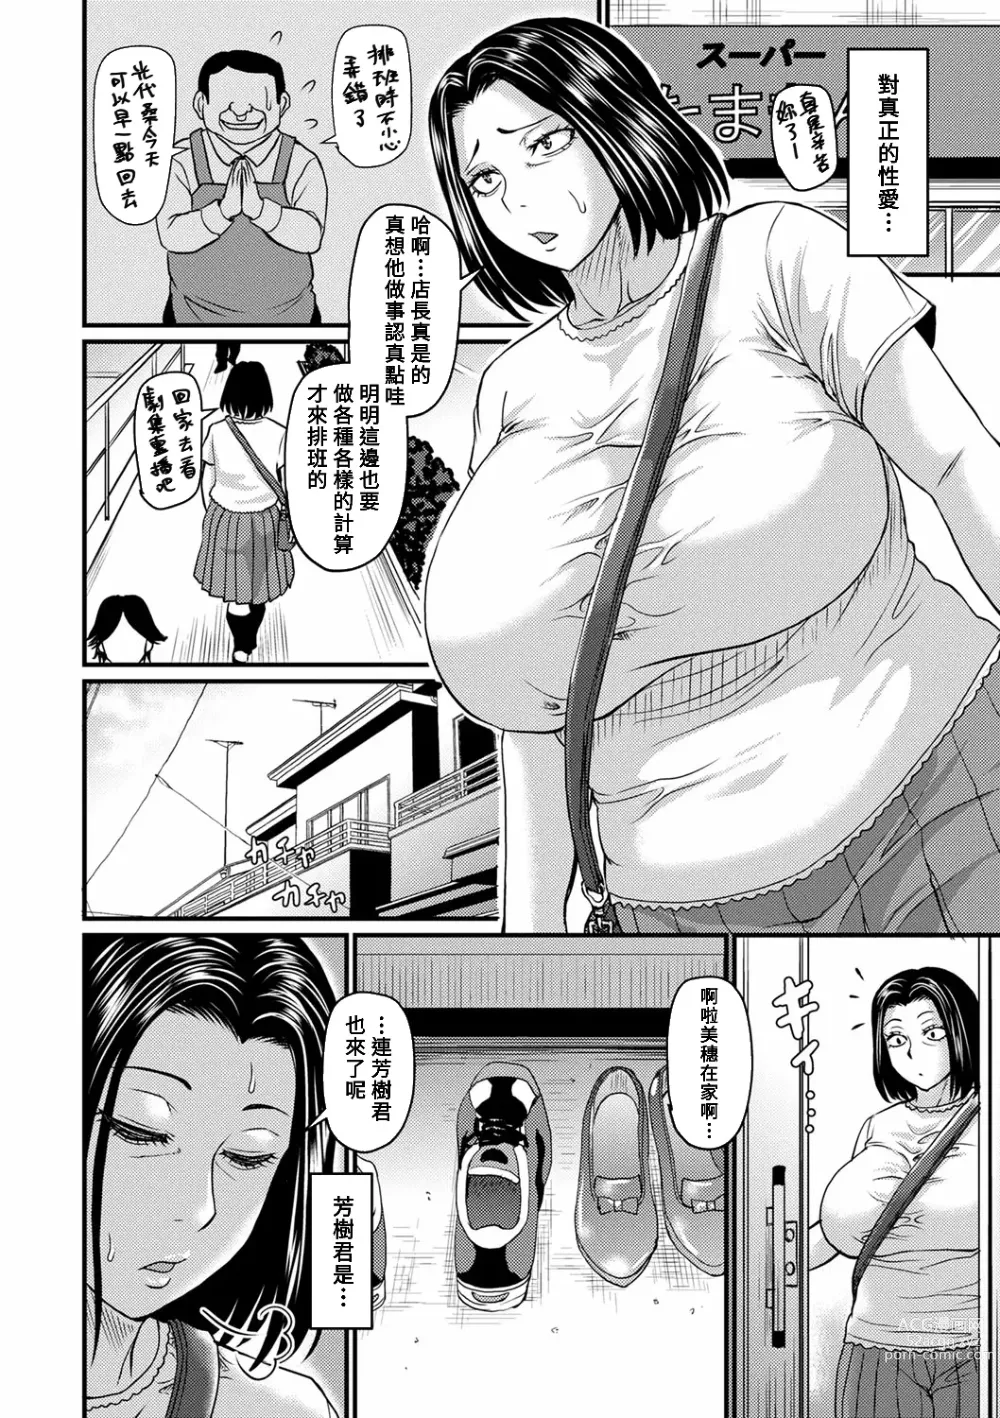 Page 2 of manga Mitsuyo-san no Shiawase Sex